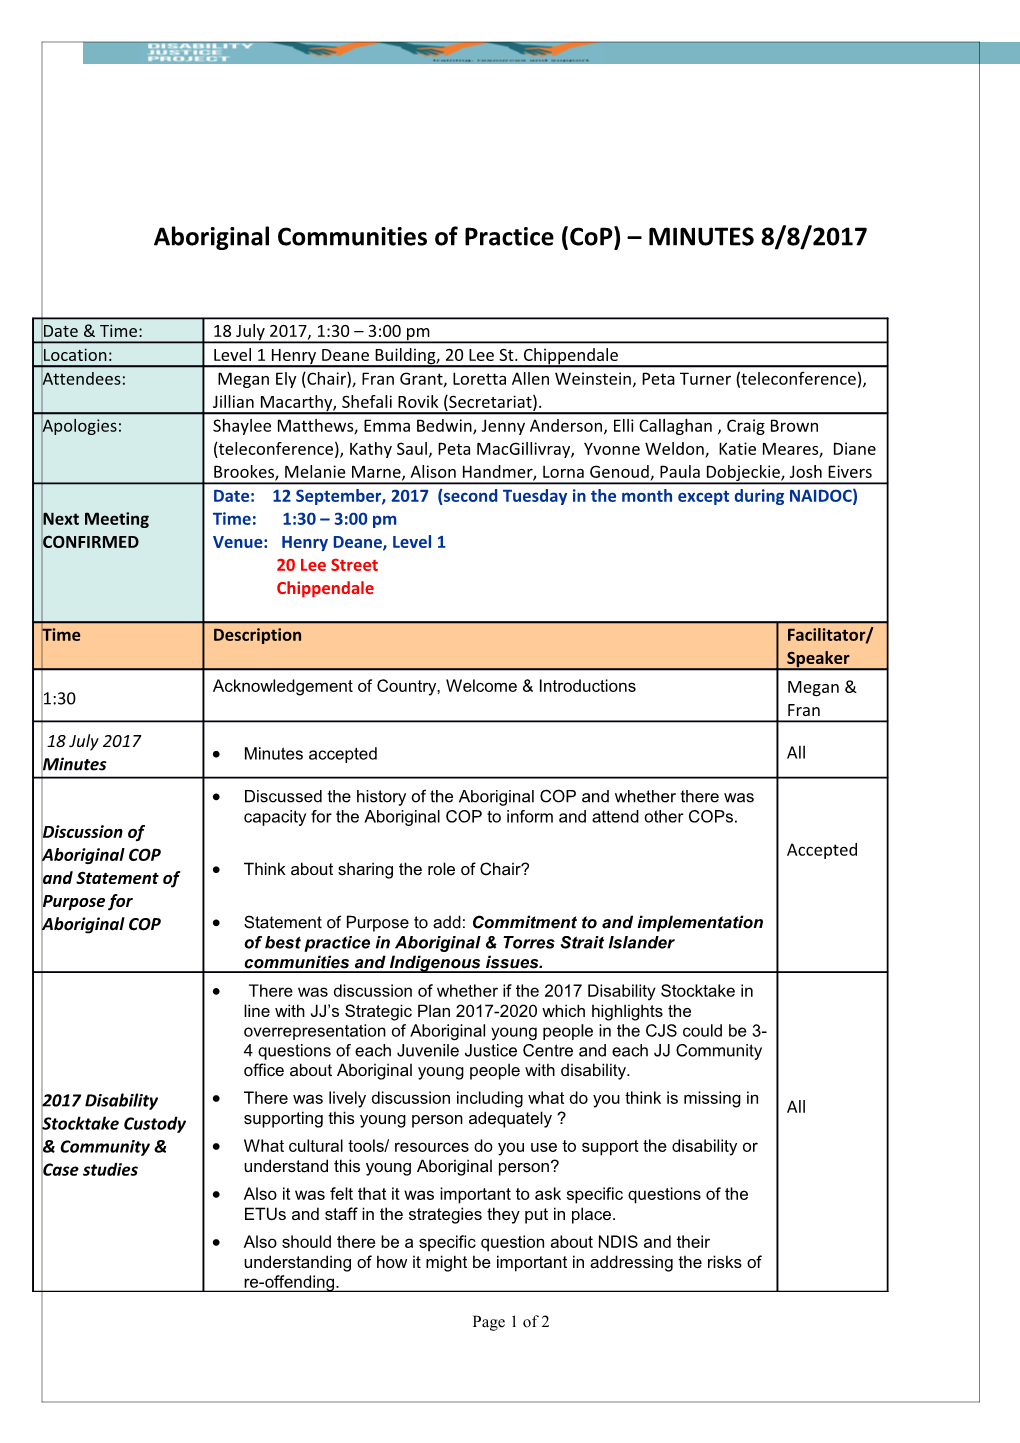 Aboriginal Communities of Practice (Cop) MINUTES8/8/2017